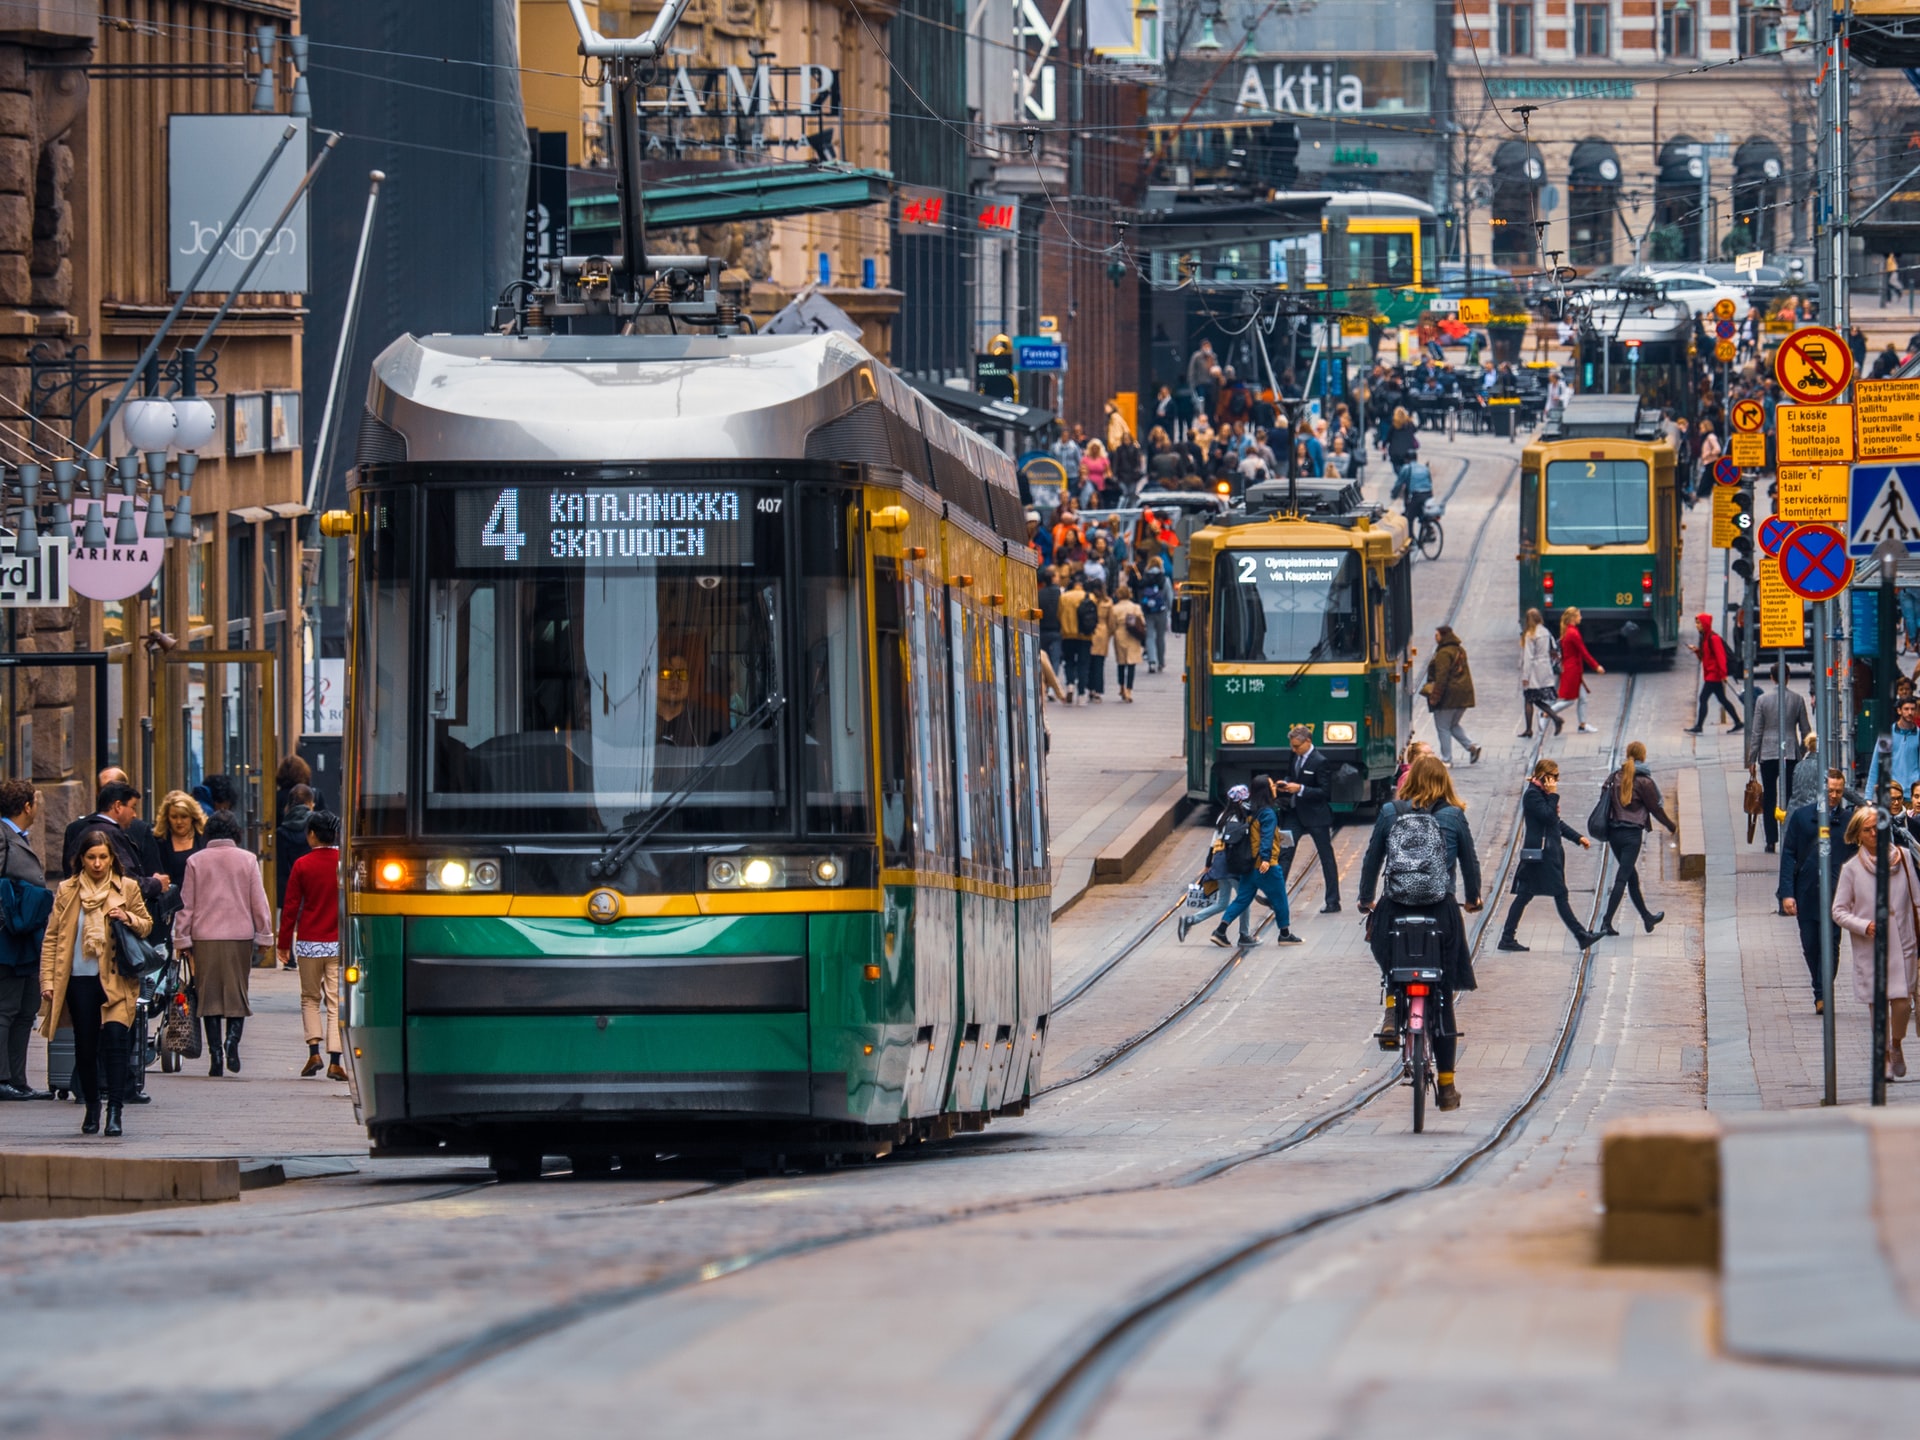 Strasse in Helsinki mit Fußgängern und Tram